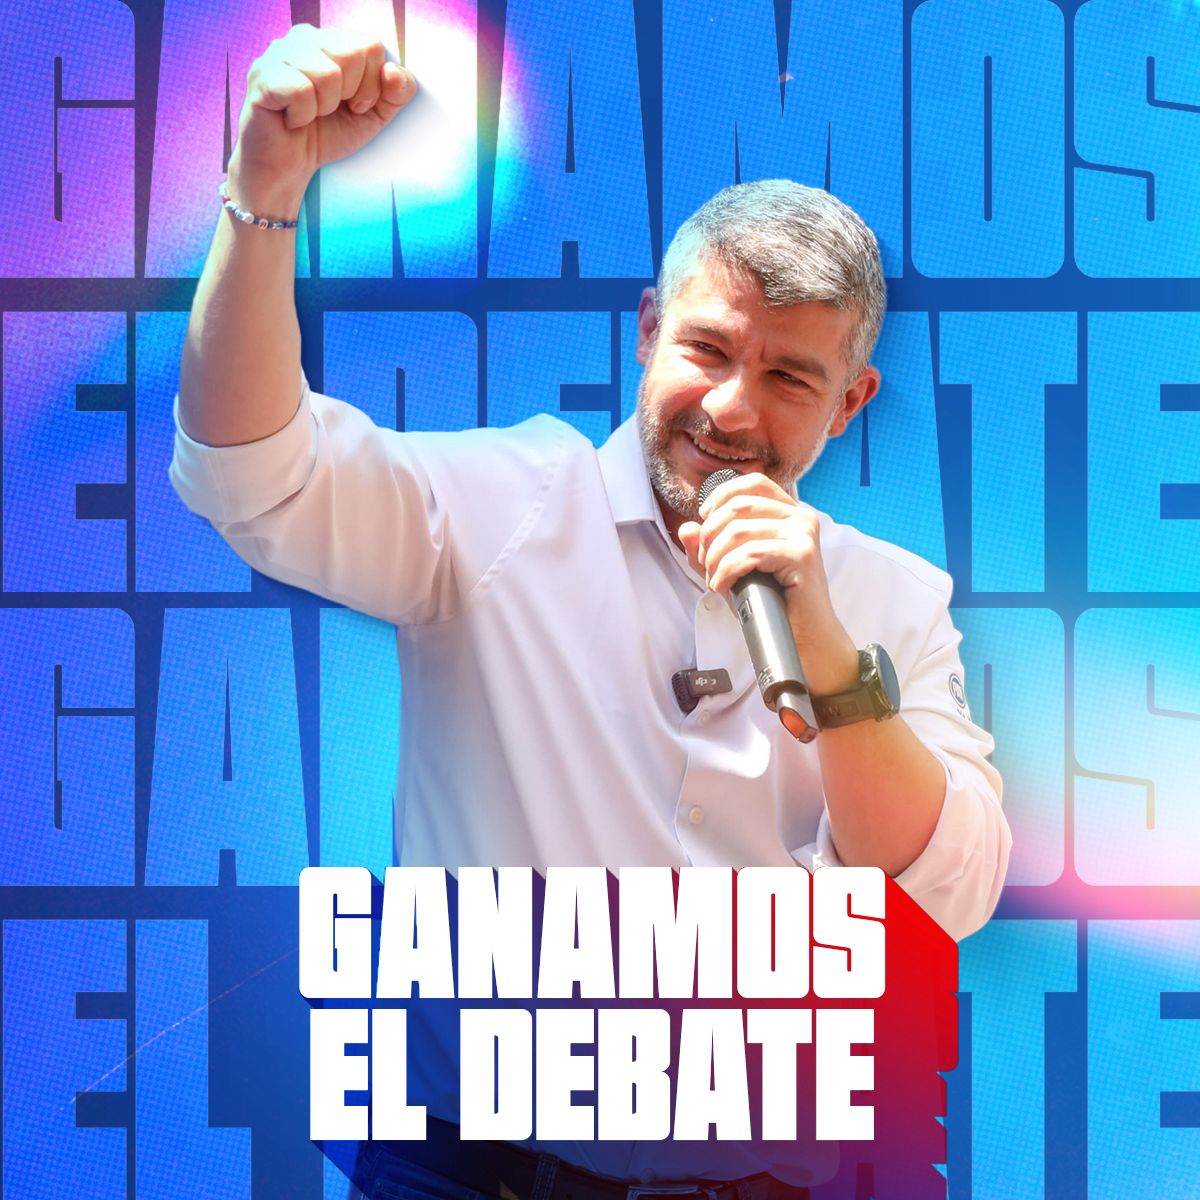 De manera contundente volvimos a ganar el #DebateChilango del @iecm. Dejamos claro que en Miguel Hidalgo no queremos la corrupción, las mentiras y la incapacidad de Morena. Aquí somos bastión de la libertad y de la democracia. Este 2 de junio ¡vamos a ganar! #MHseDefiende